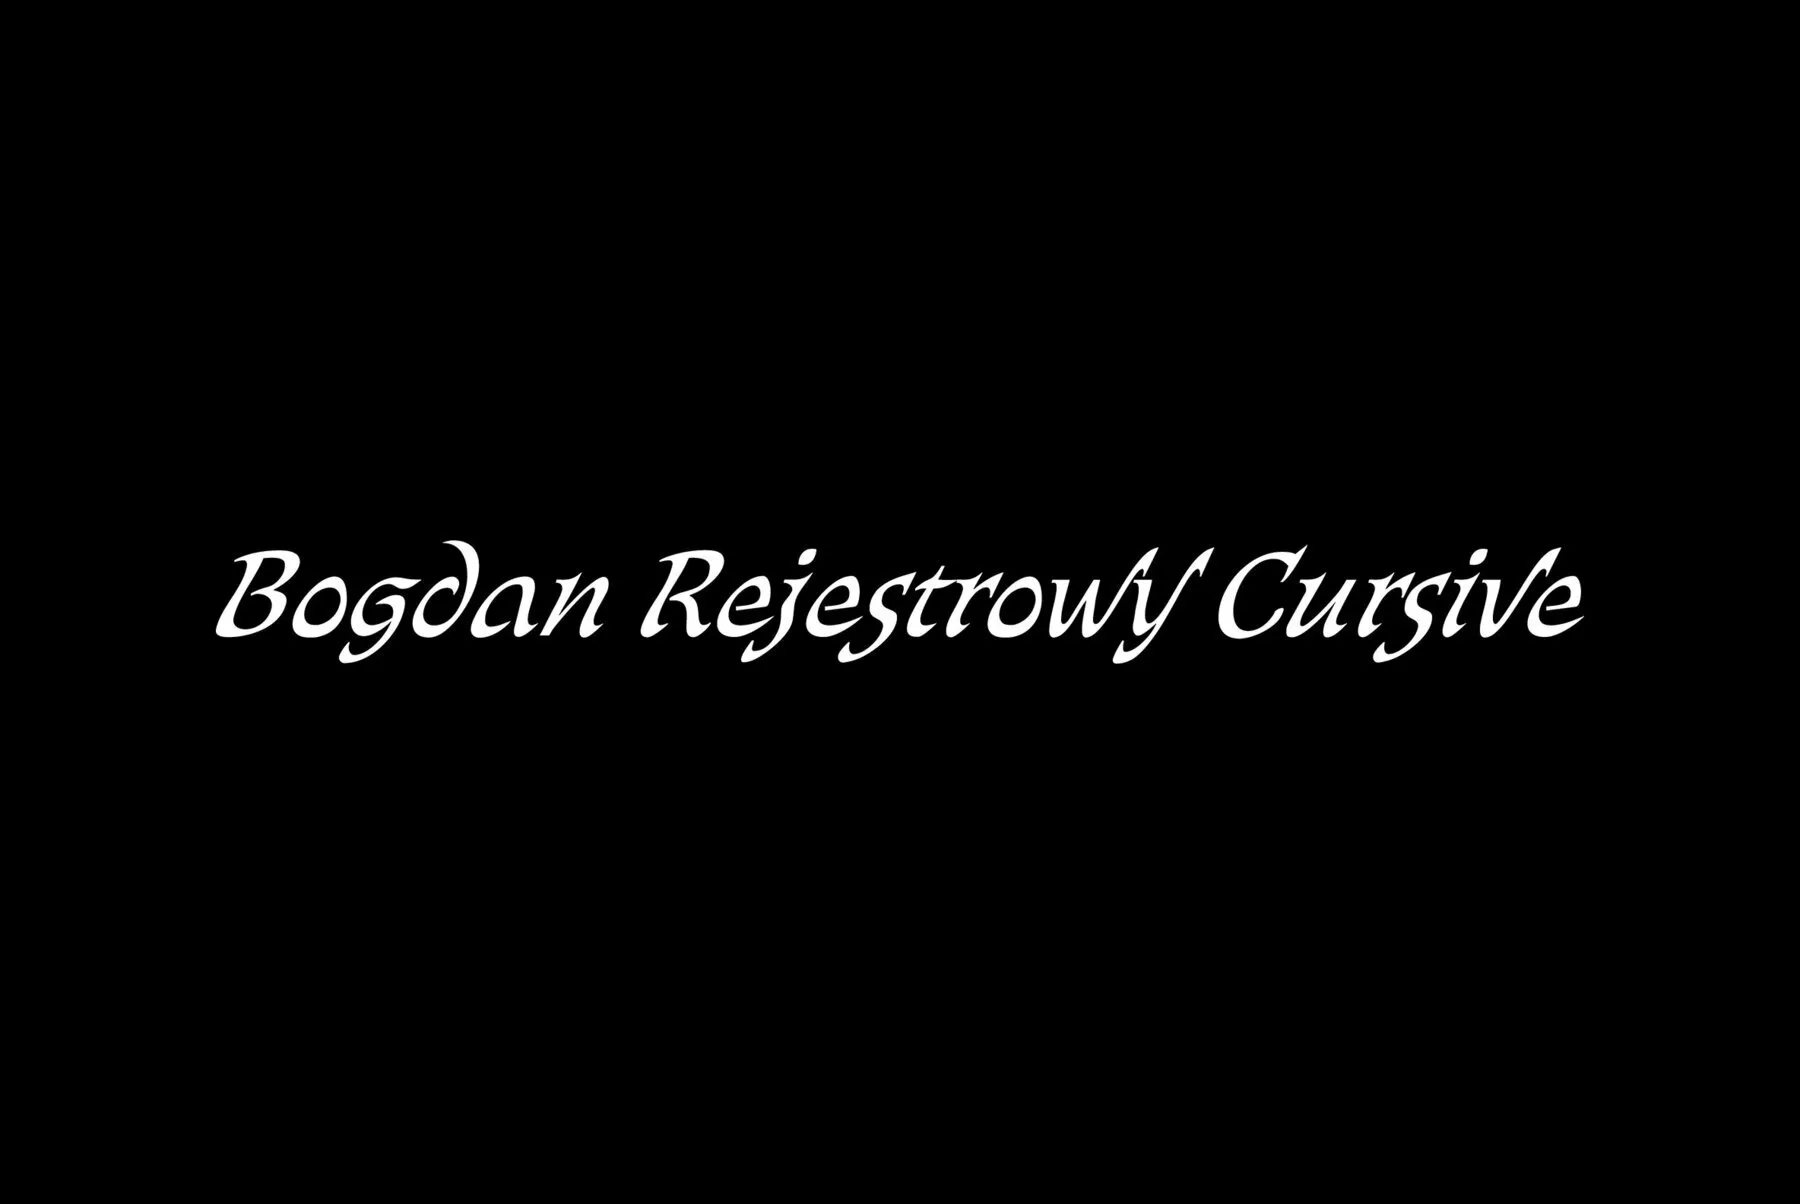 Bogdan Rejestrowy Cursive